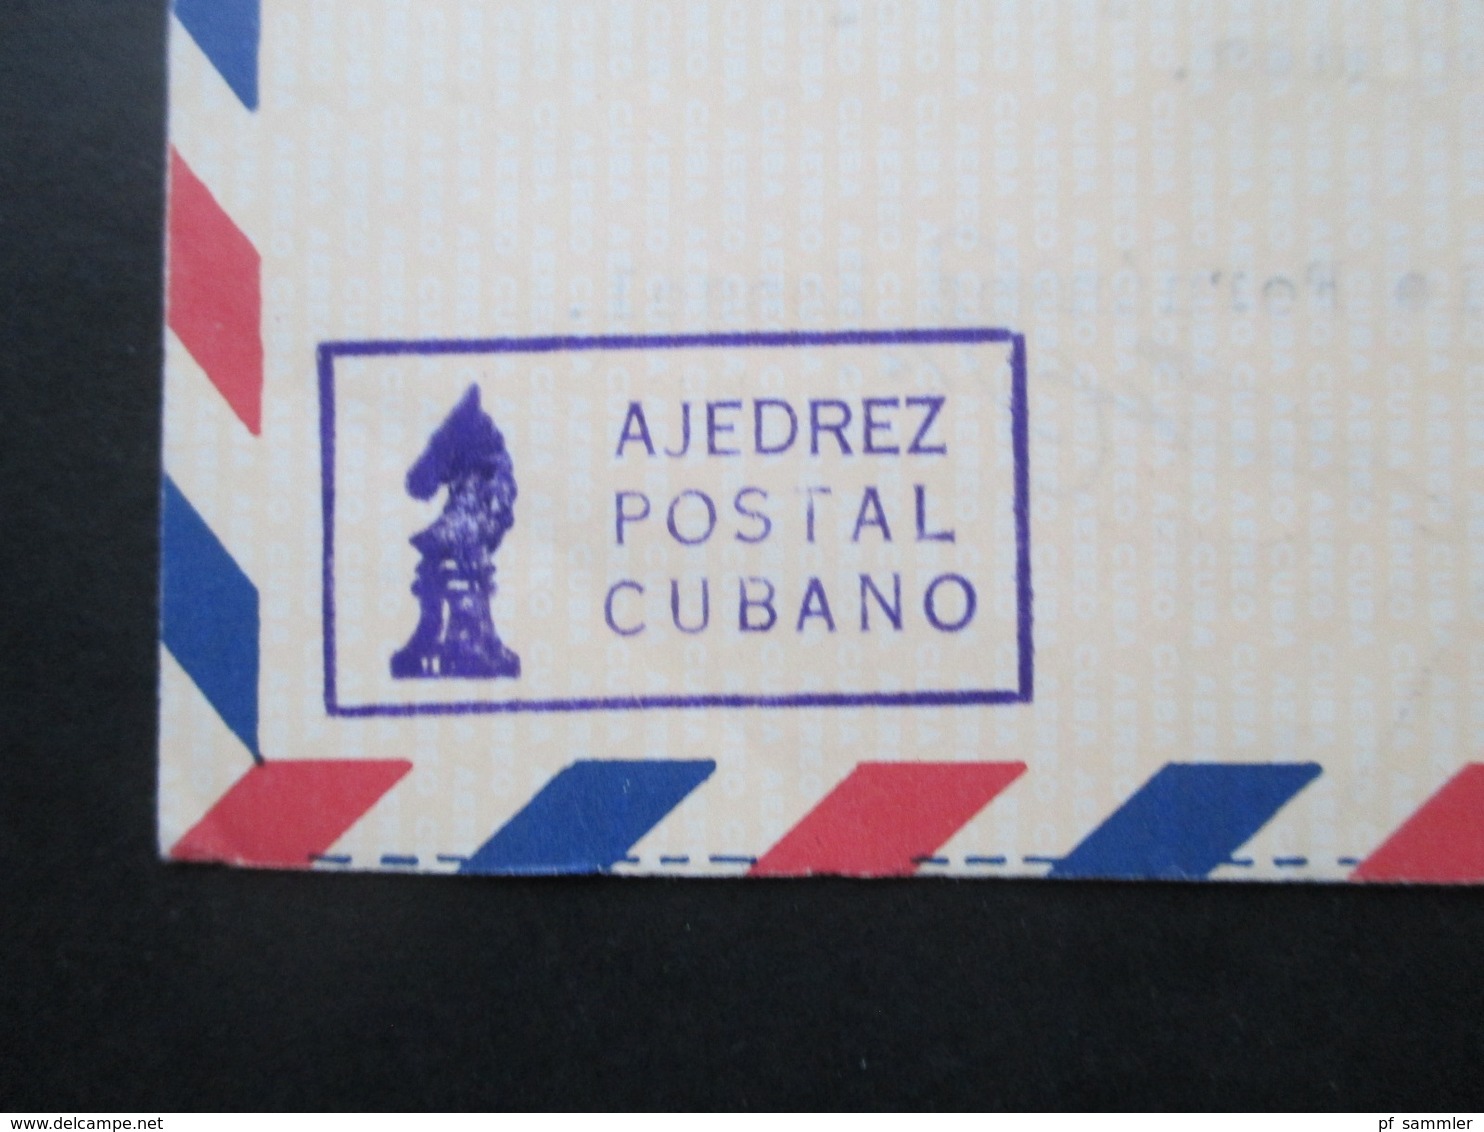 Kuba / Cuba 1975 - 1982 Air Mail Letter / Aerogramme in die DDR 18 Belege Luftpost